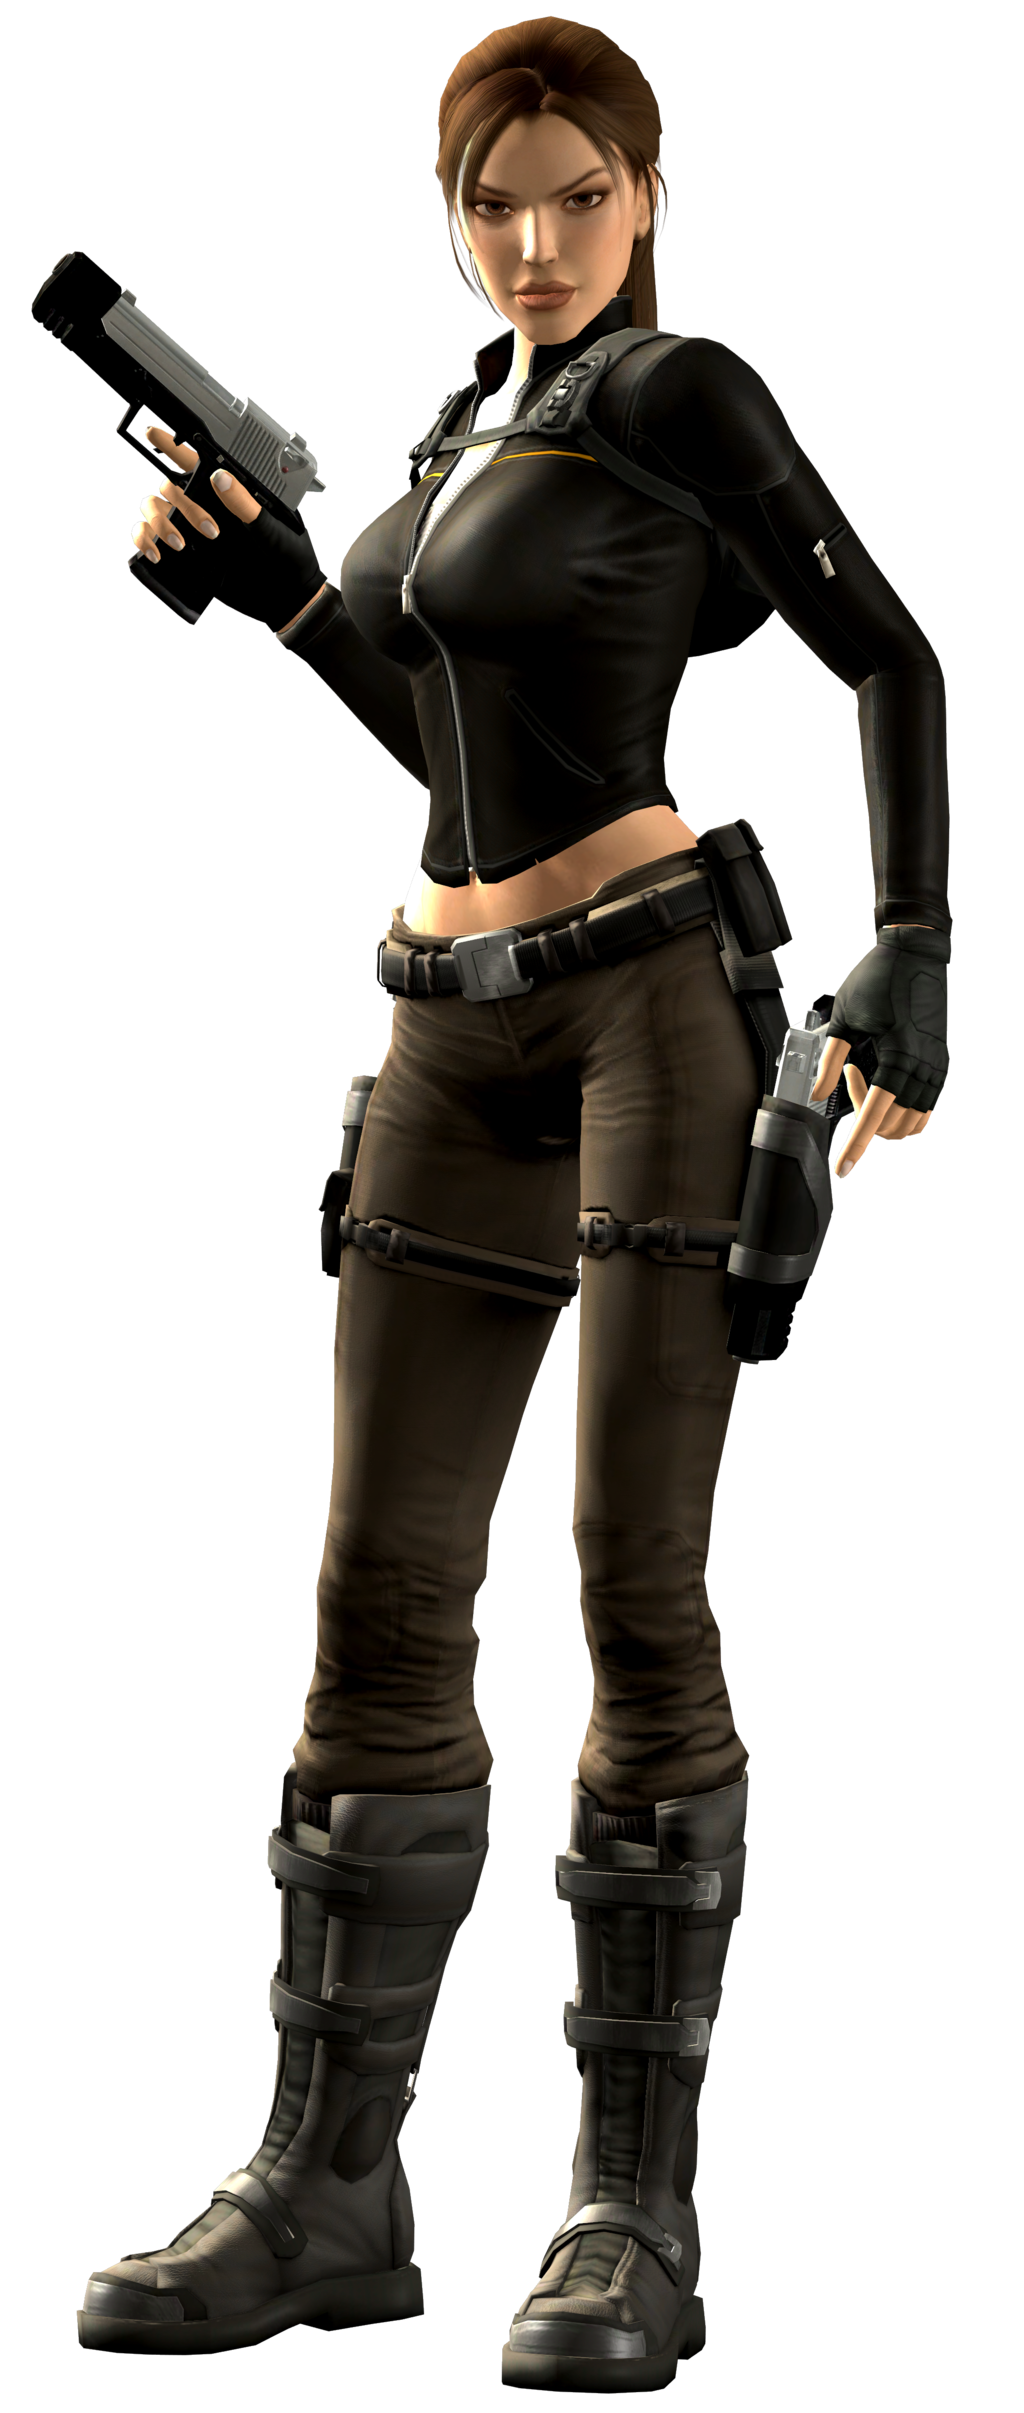 Lara Croft | Tomb Raider PNG Image - PurePNG | Free 